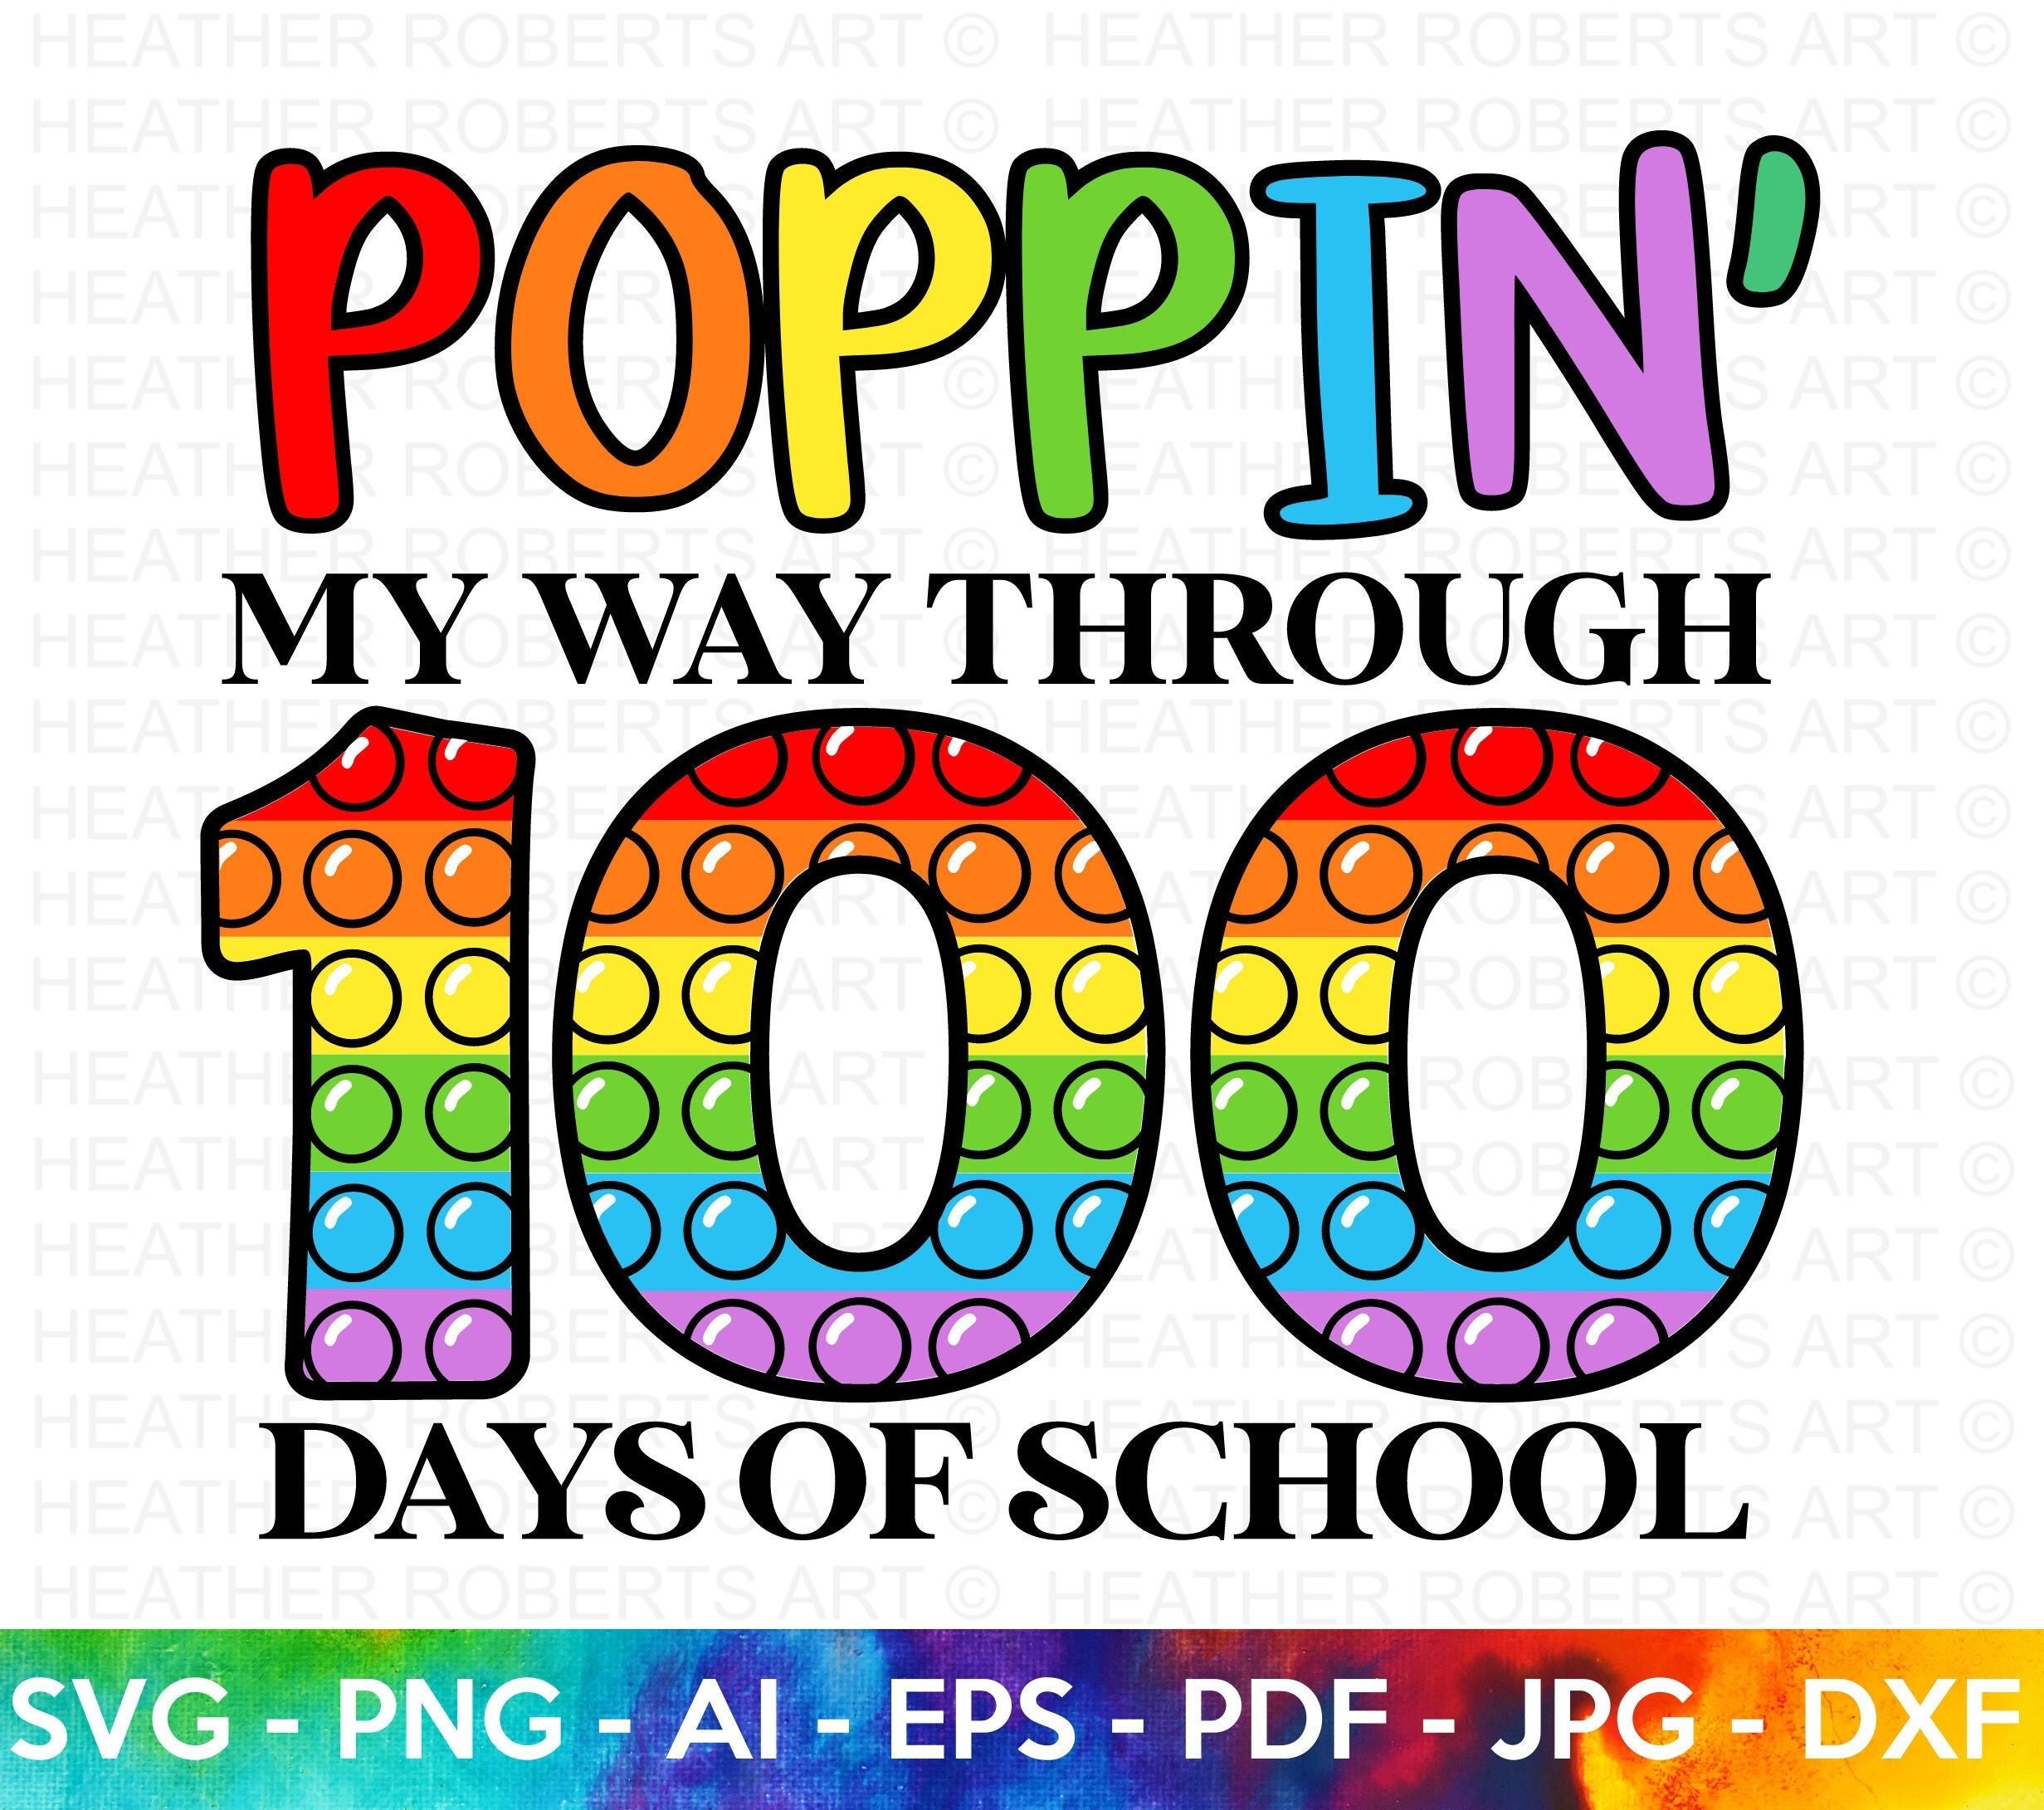 La linea del 100 con il Pop-It • Edudoro